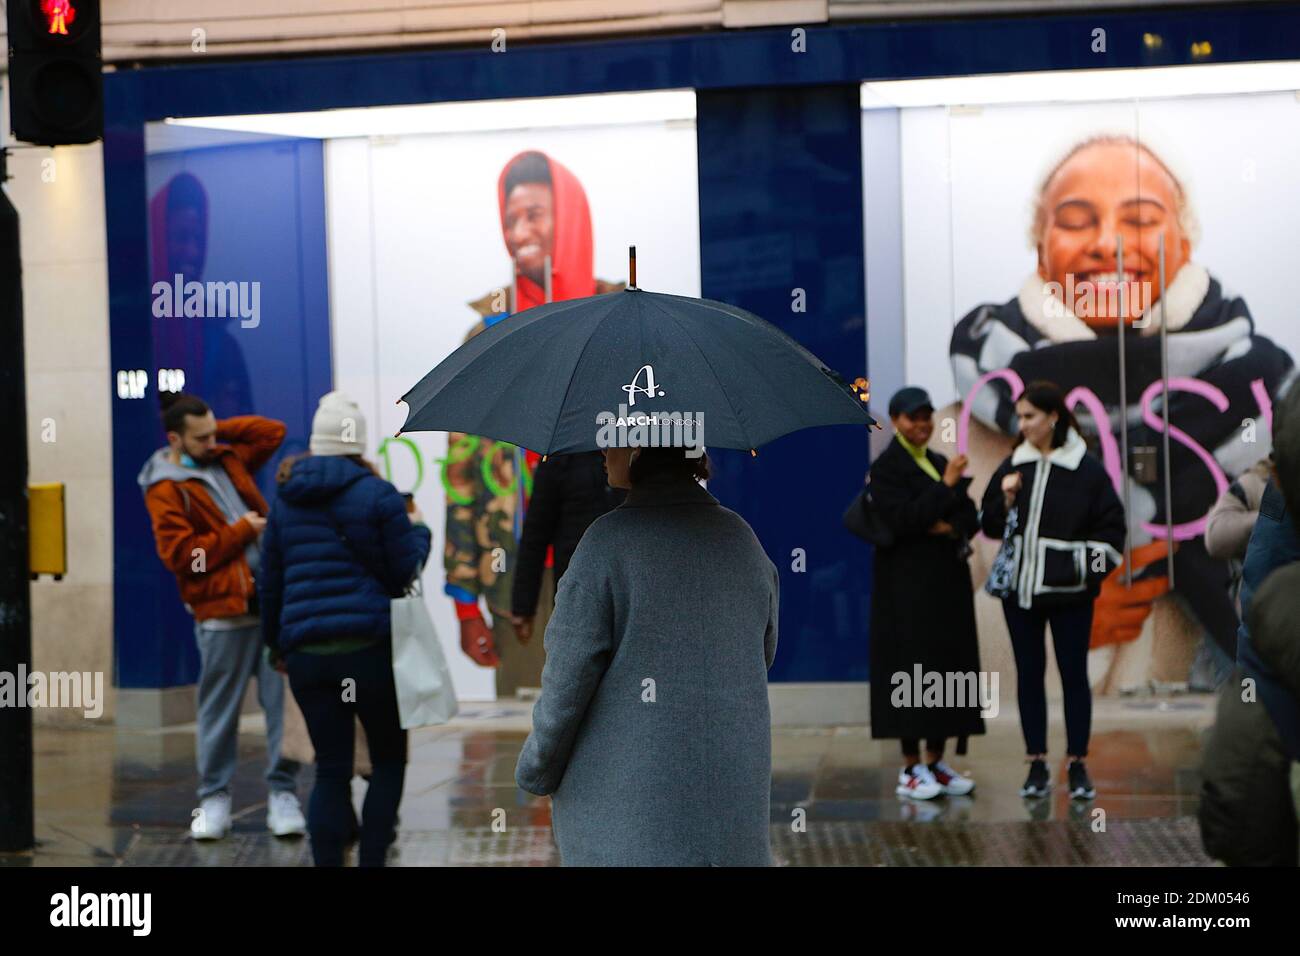 Westminster, London, Großbritannien. 16 Dez 2020. UK Wetter: Kälter und nieseliger Regen im West End in London. Leute, die mit Sonnenschirmen herumlaufen. Foto: PAL Media/Alamy Live News Stockfoto